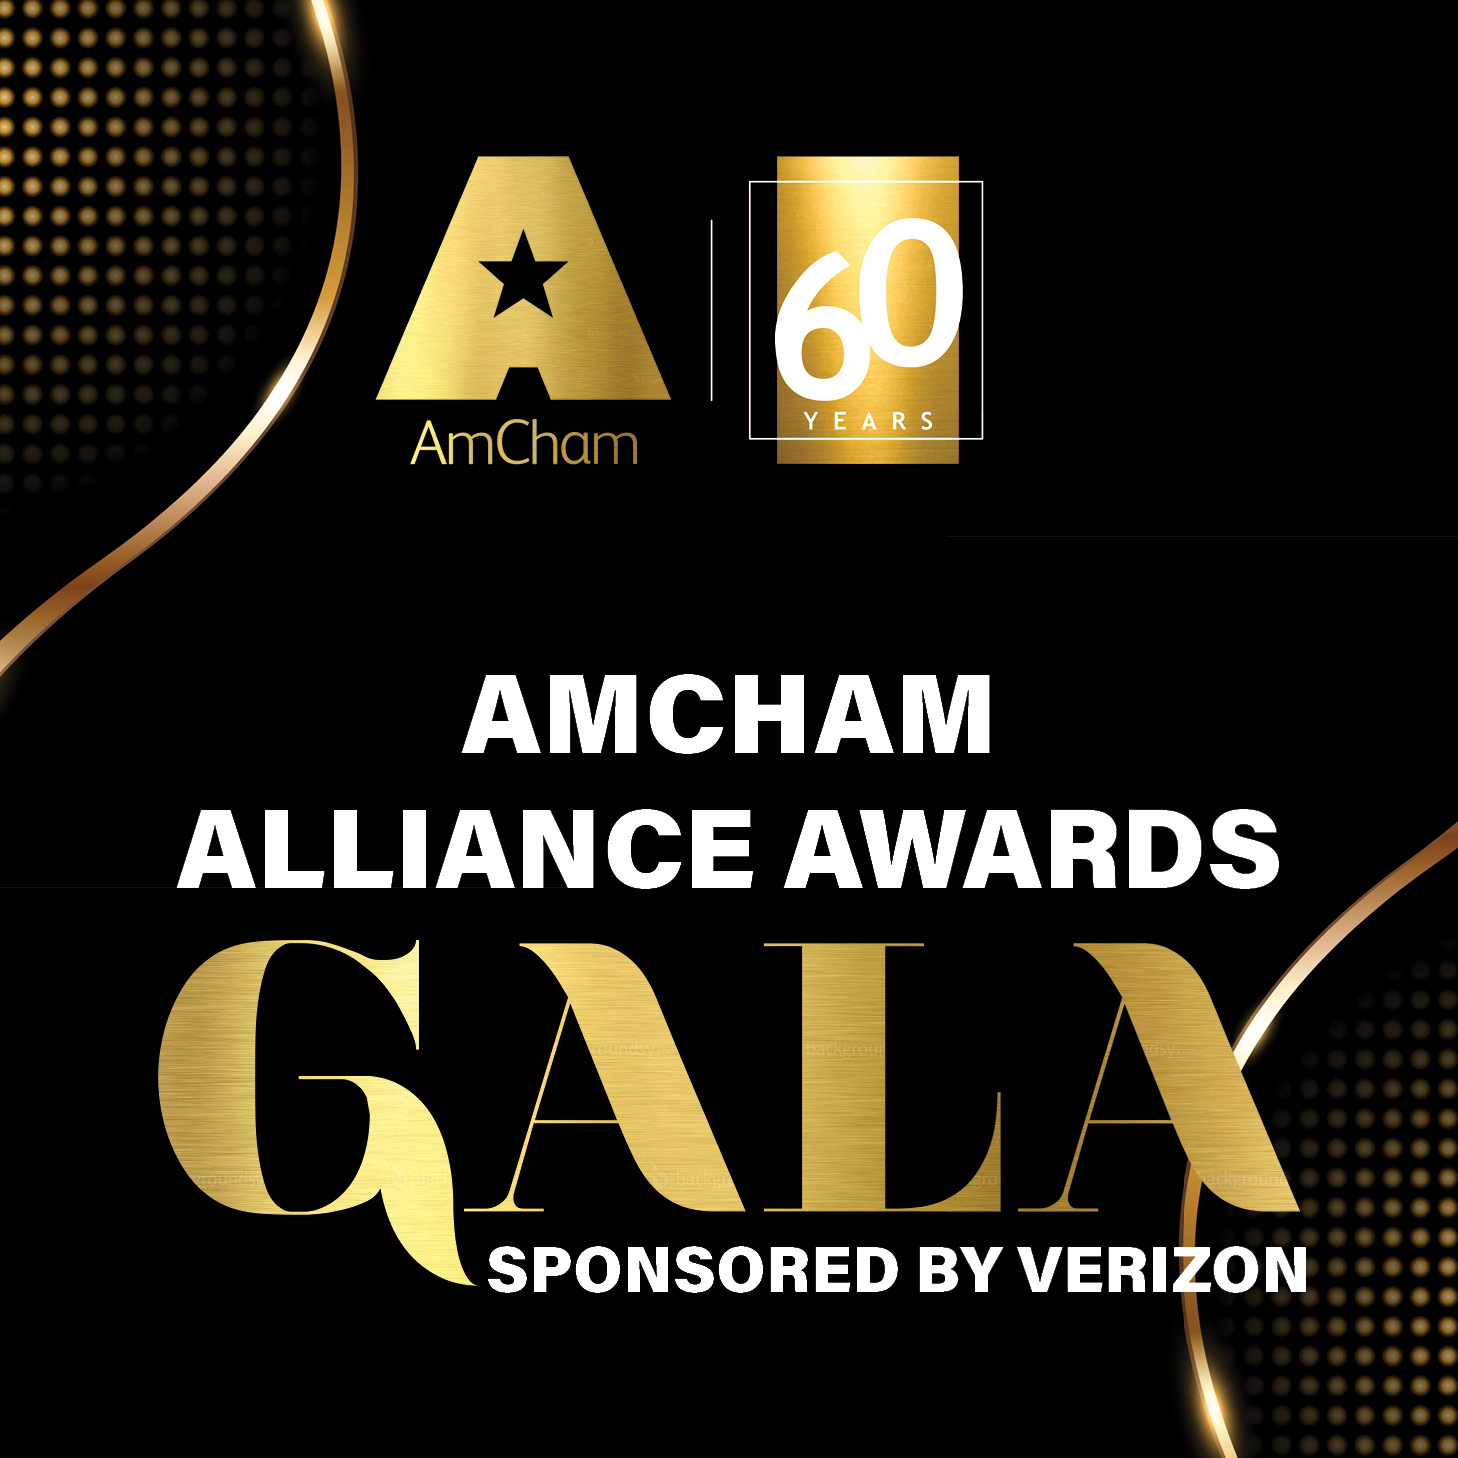 RESCHEDULED: AmCham Alliance Awards Gala